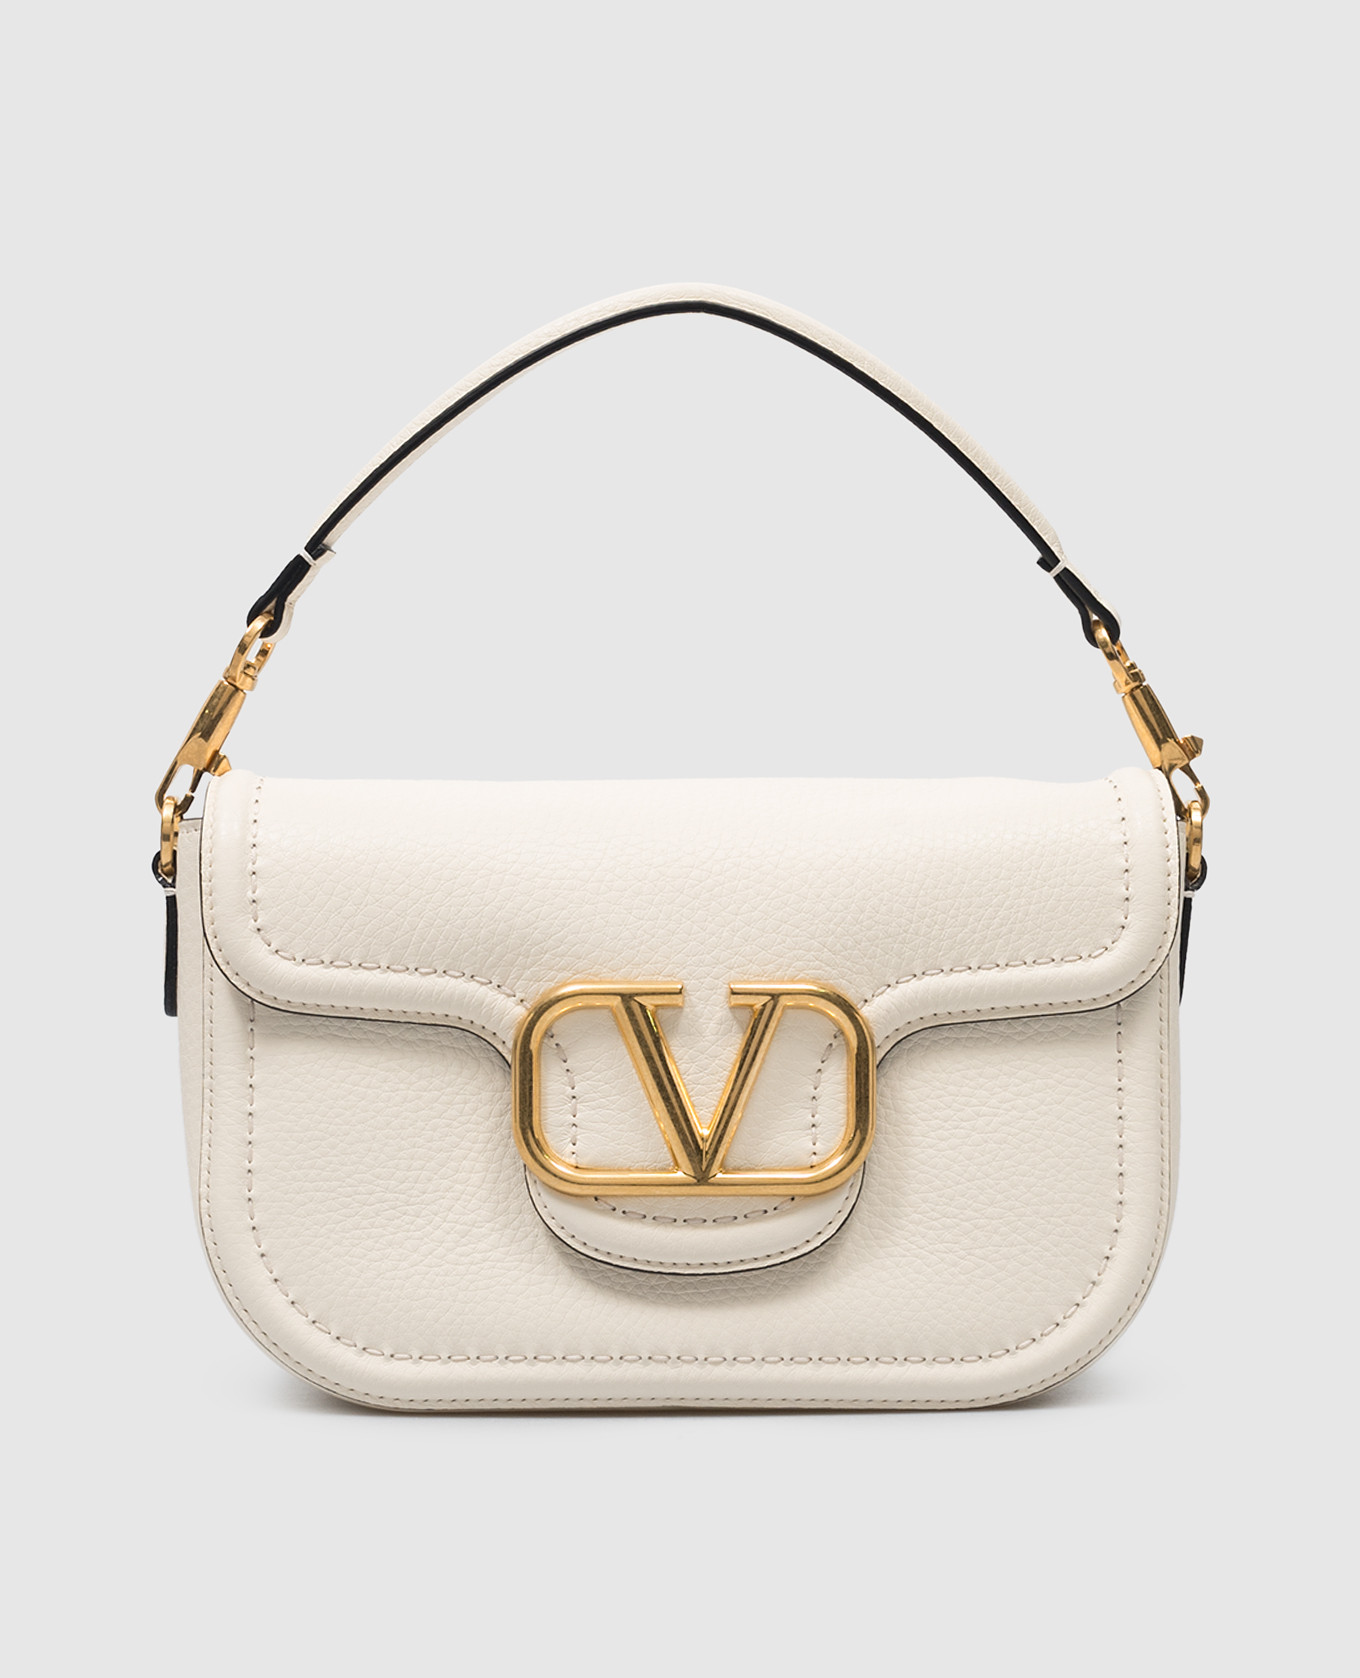 VLogo white leather messenger bag